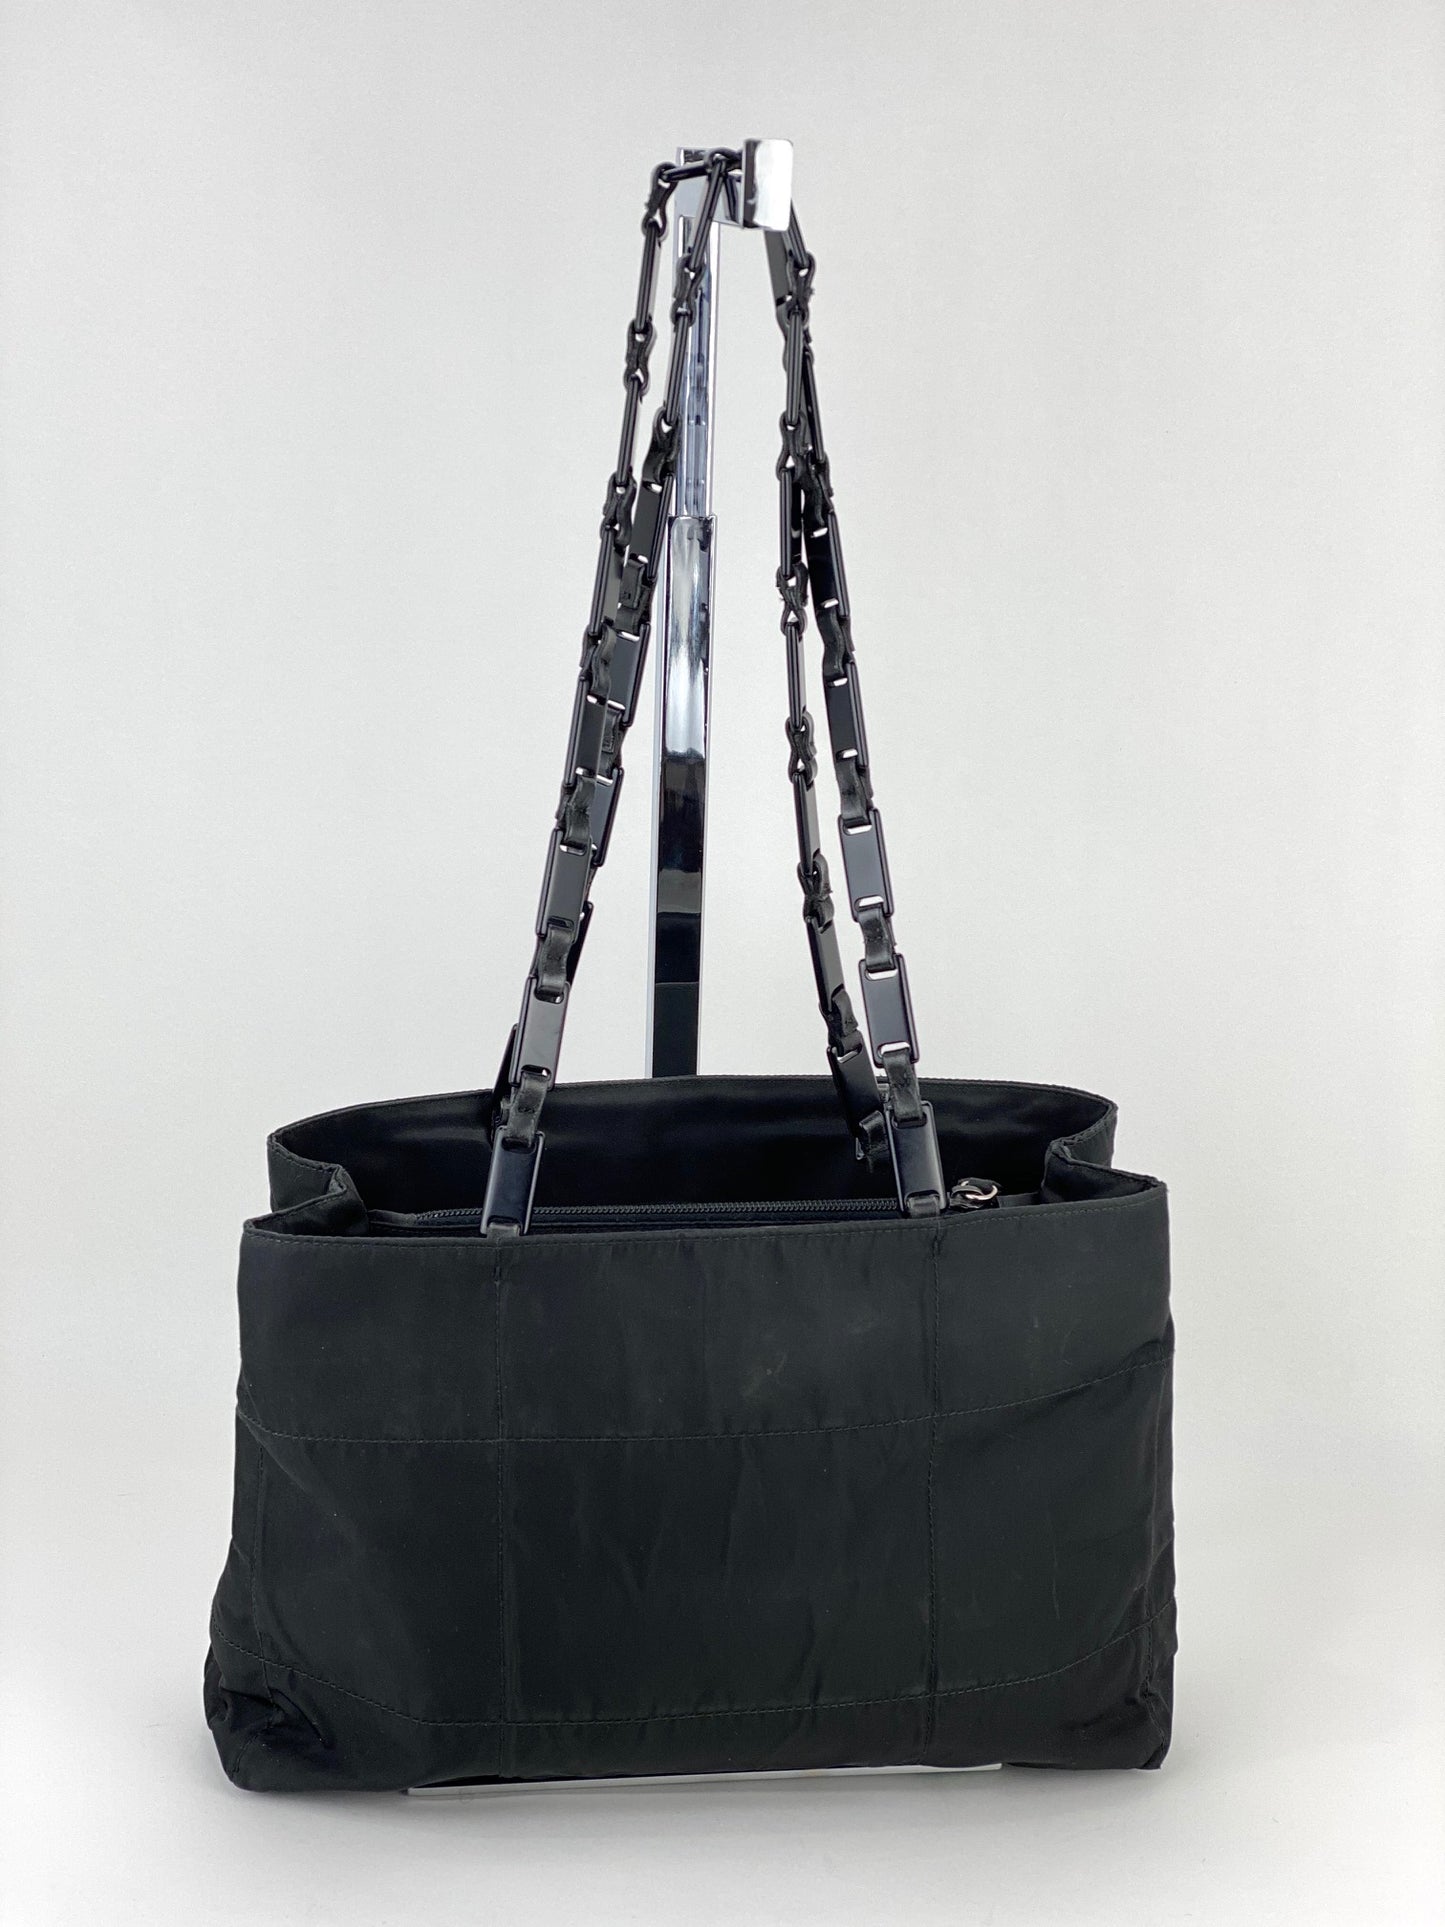 Prada Nylon Tessuto Suffiano Nylon Tote - Bijoux Bag Spa & Consignment